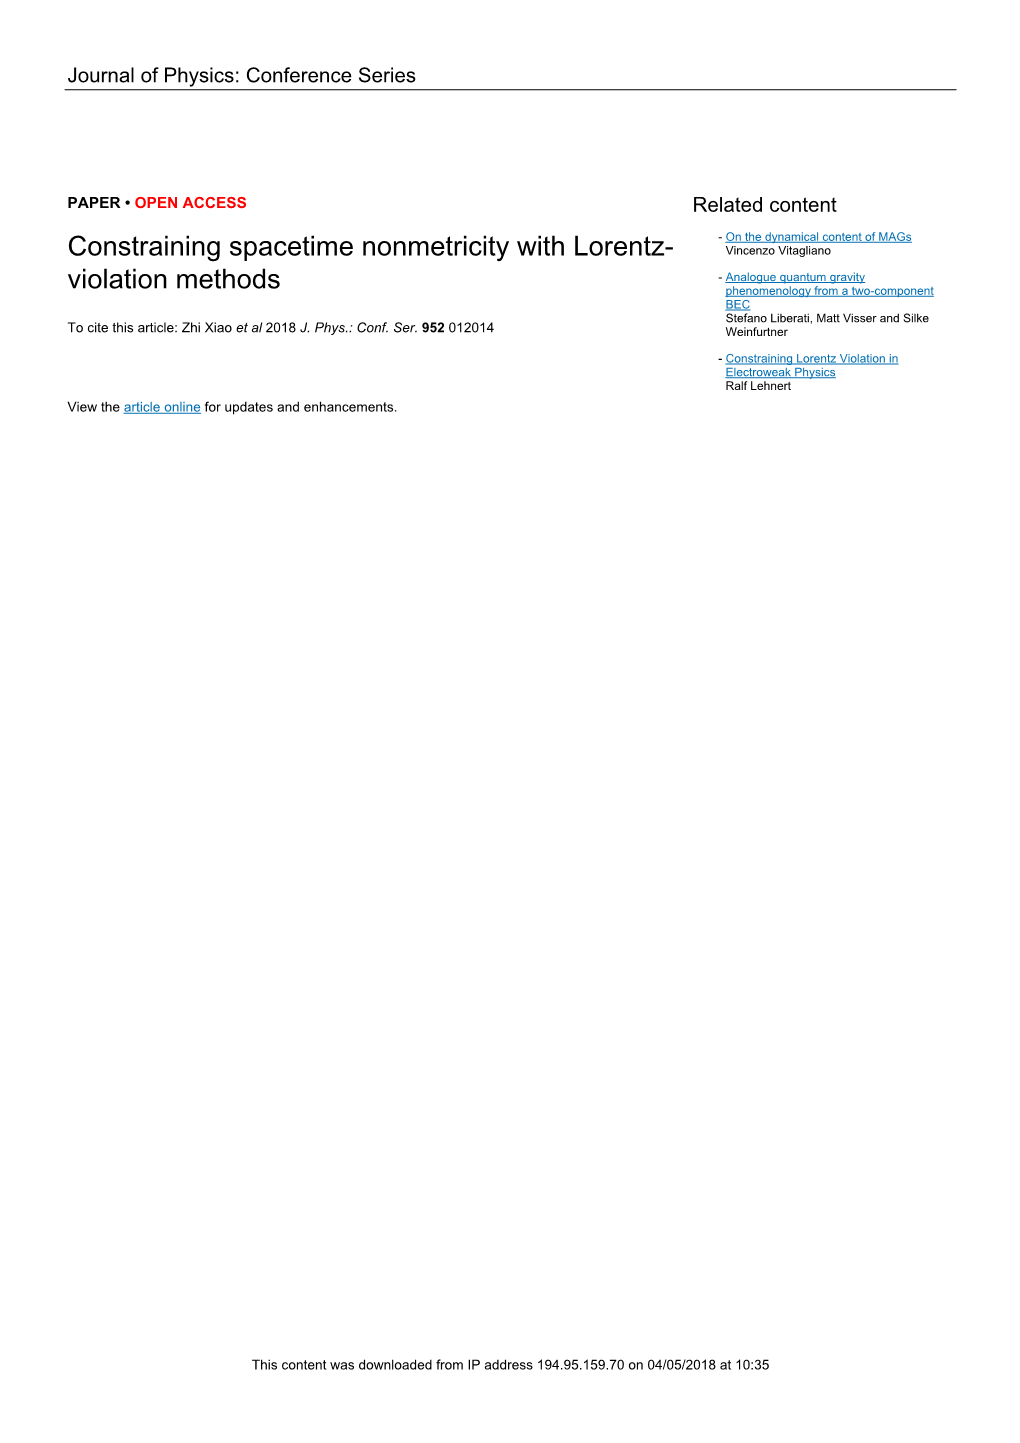 Constraining Spacetime Nonmetricity with Lorentz